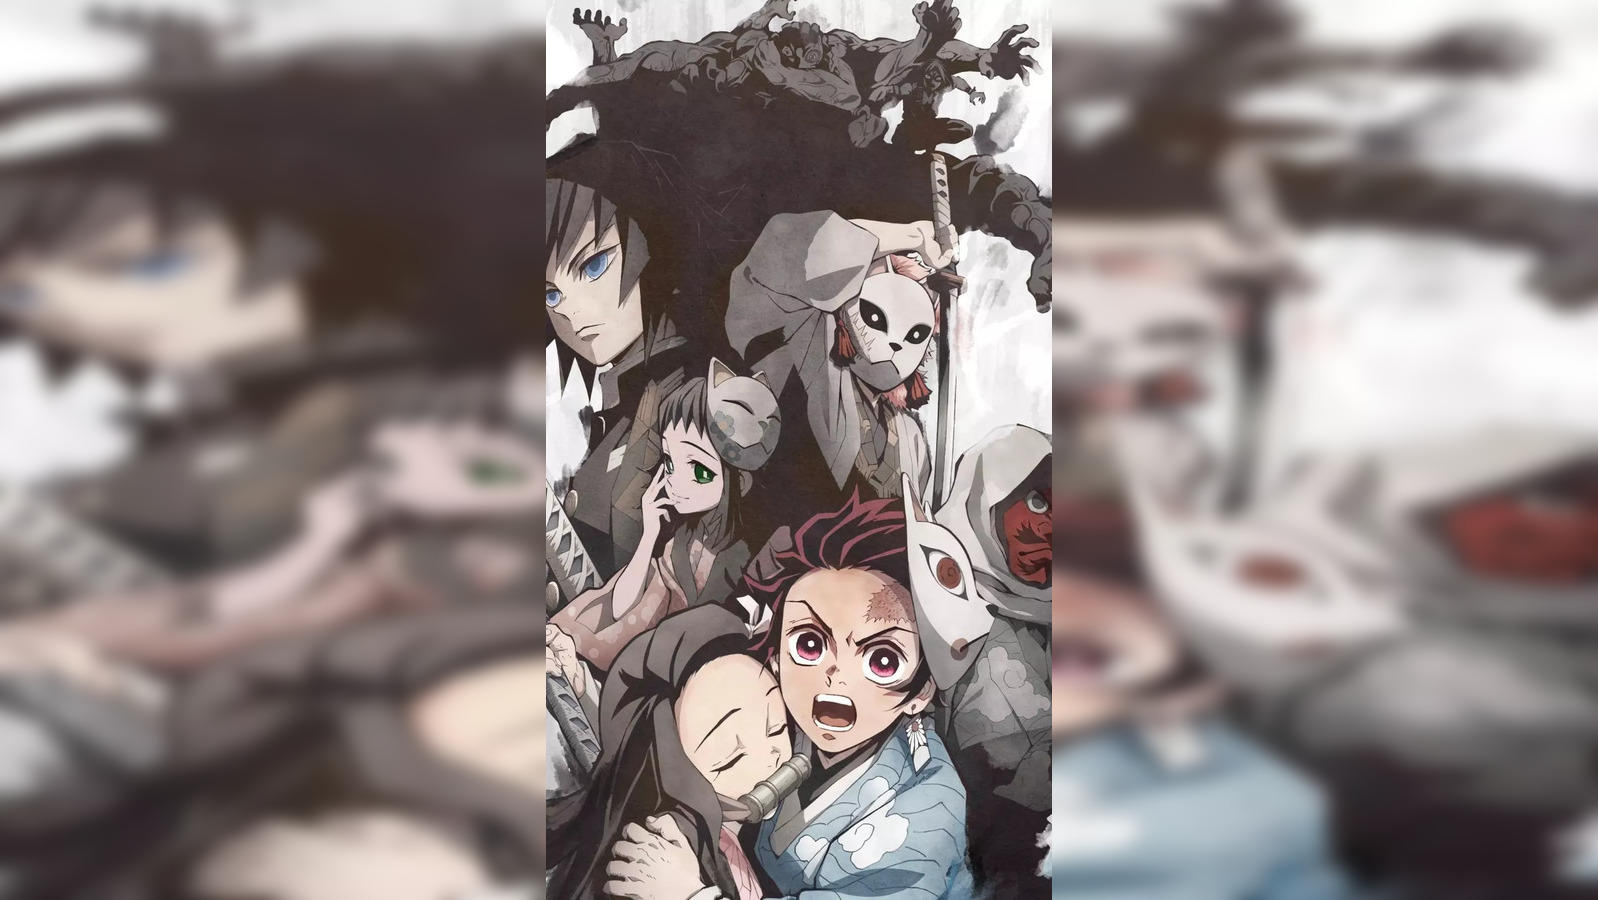 Demon Slayer: Kimetsu no Yaiba na Netflix em Abril - AnimeNew